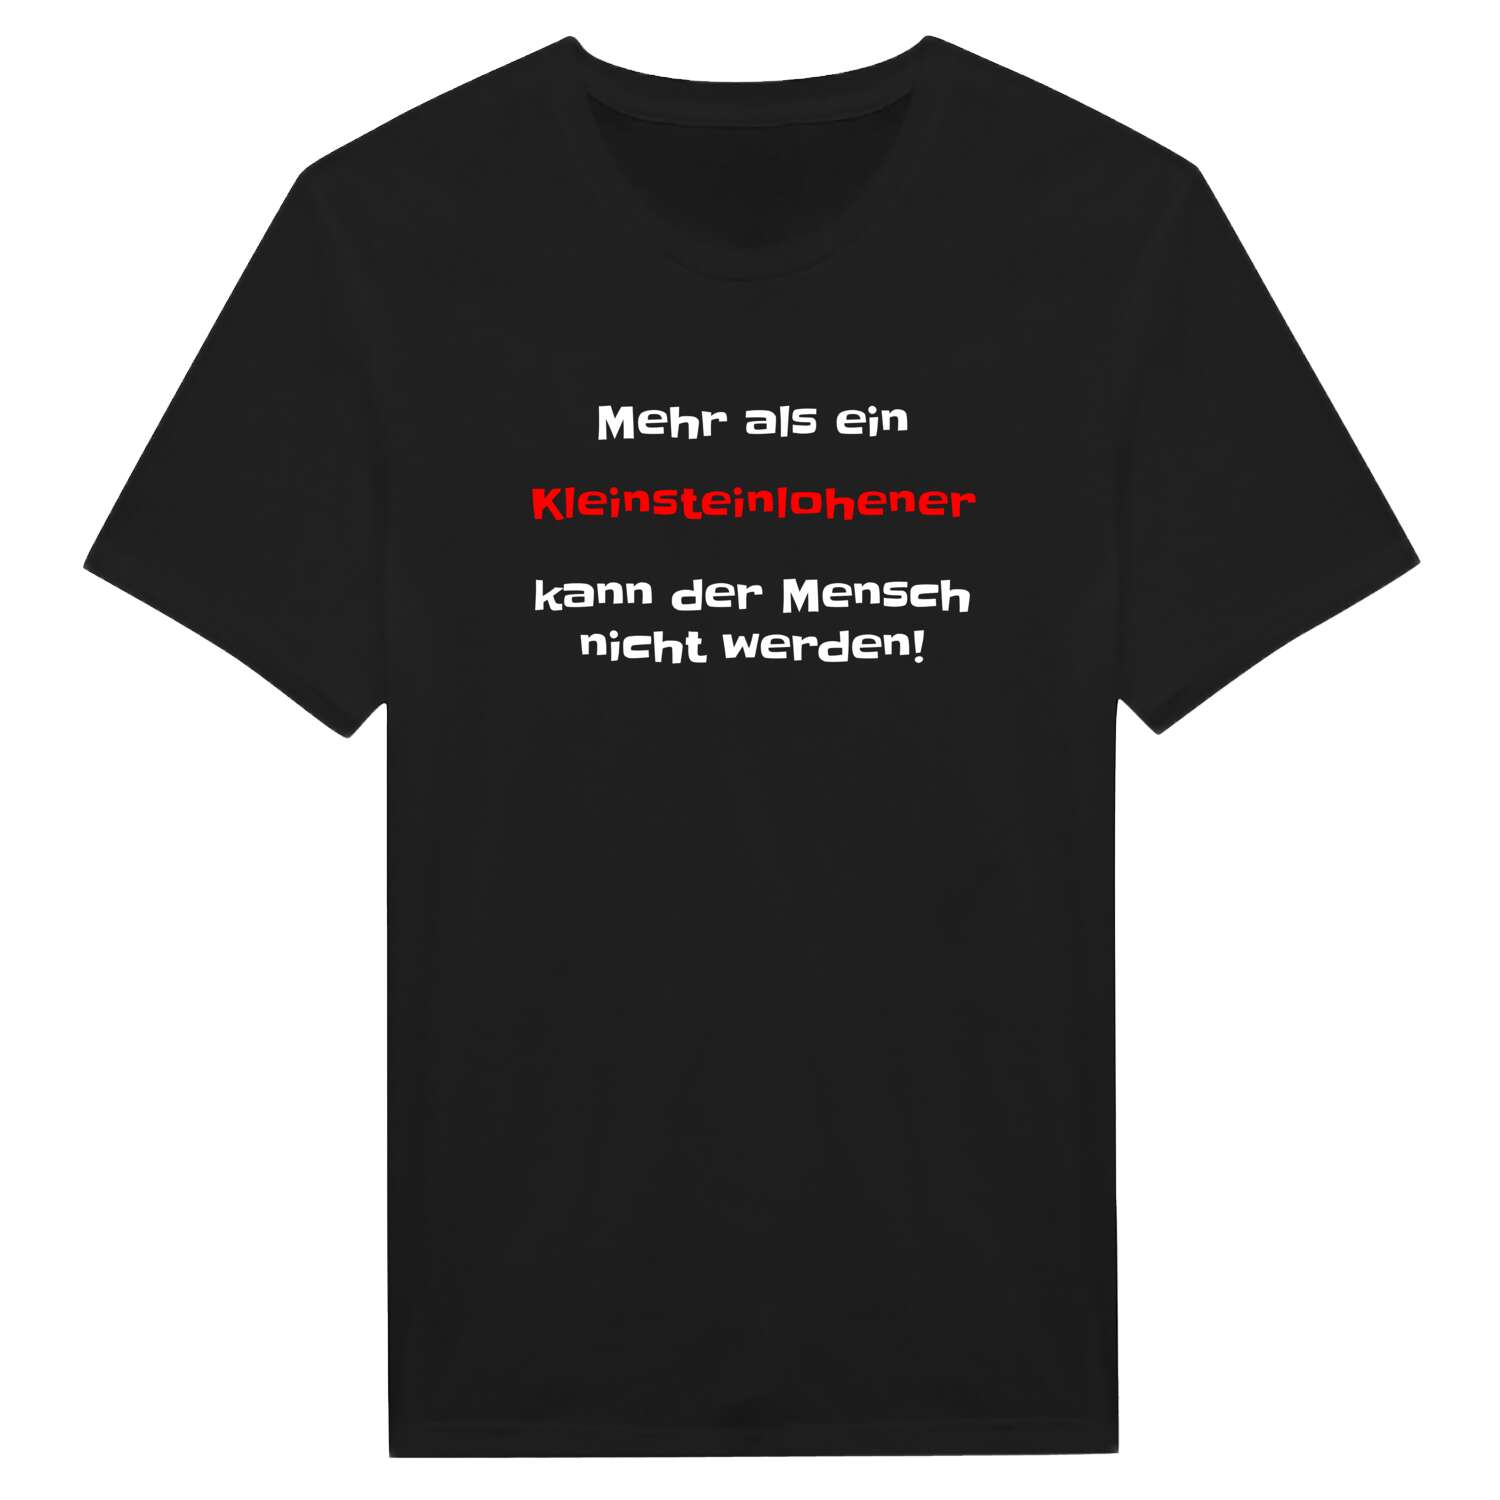 Kleinsteinlohe T-Shirt »Mehr als ein«